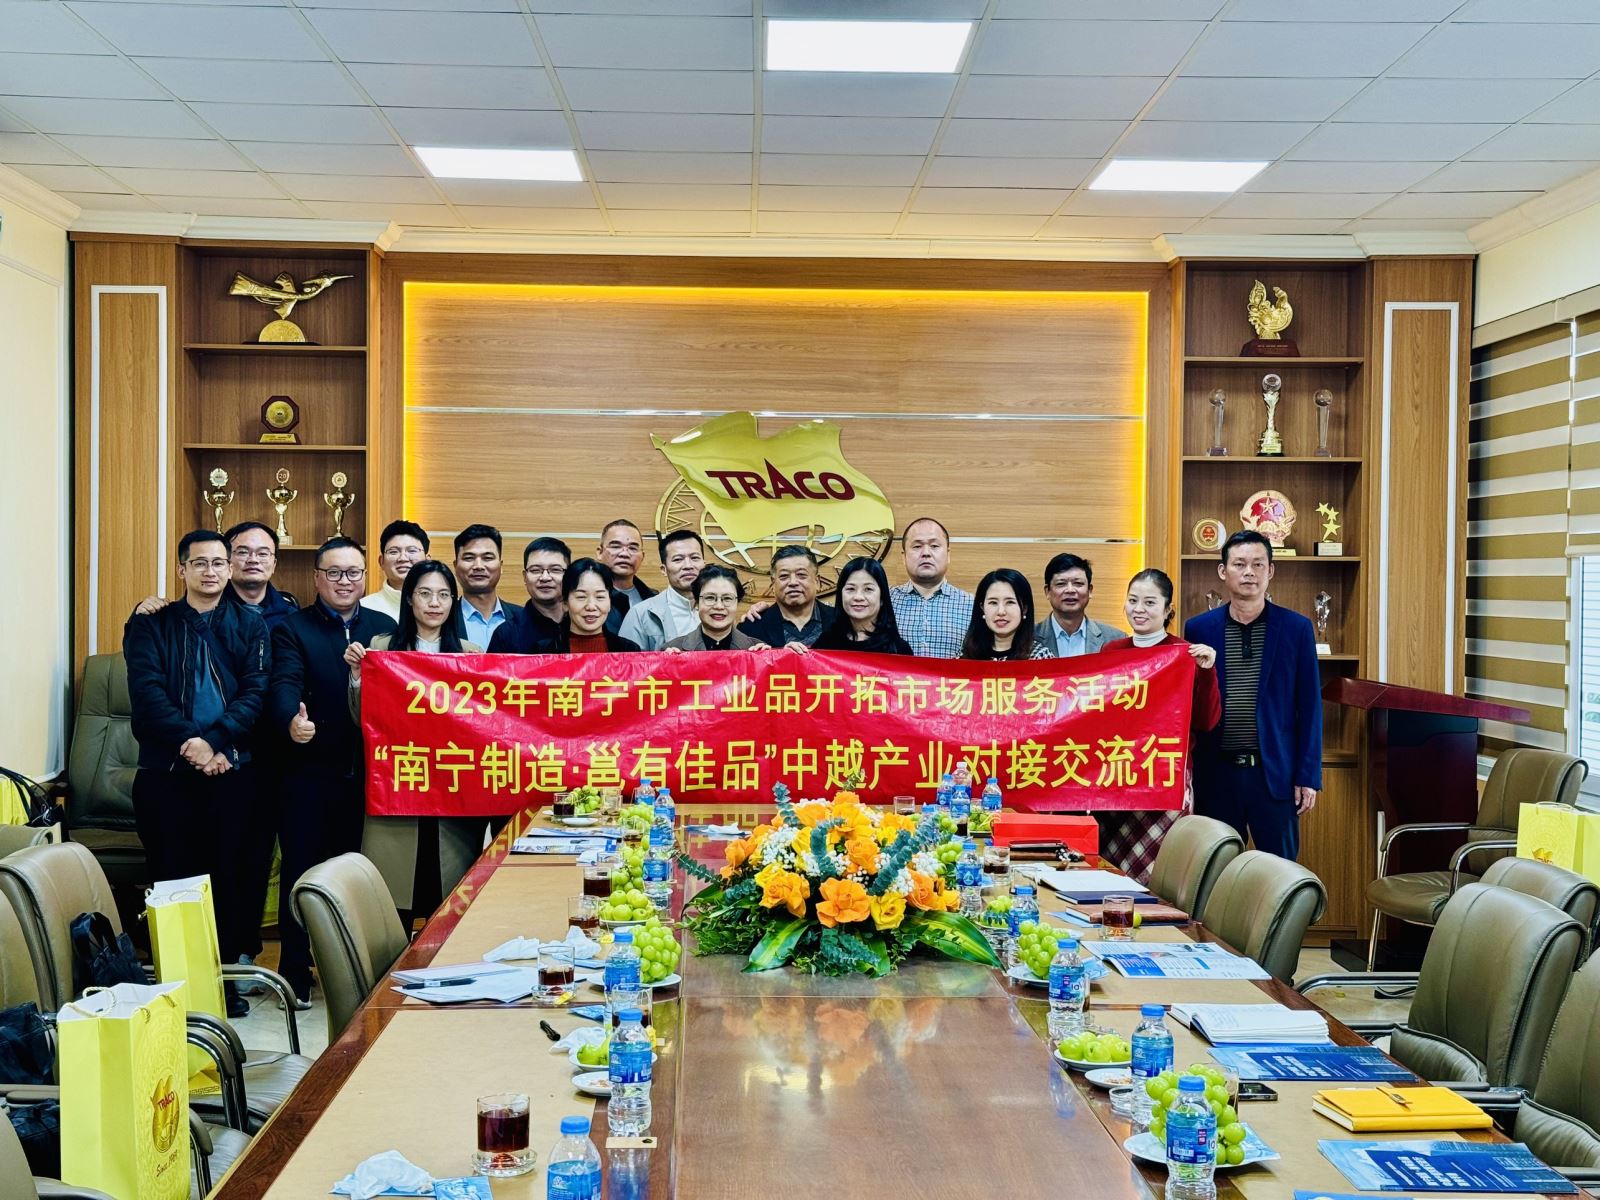 [TRACO] Đoàn Doanh nghiệp Nam Ninh Trung Quốc tìm hiểu cơ hội đầu tư tại Hải Phòng - Đến thăm và làm việc tại TRACO